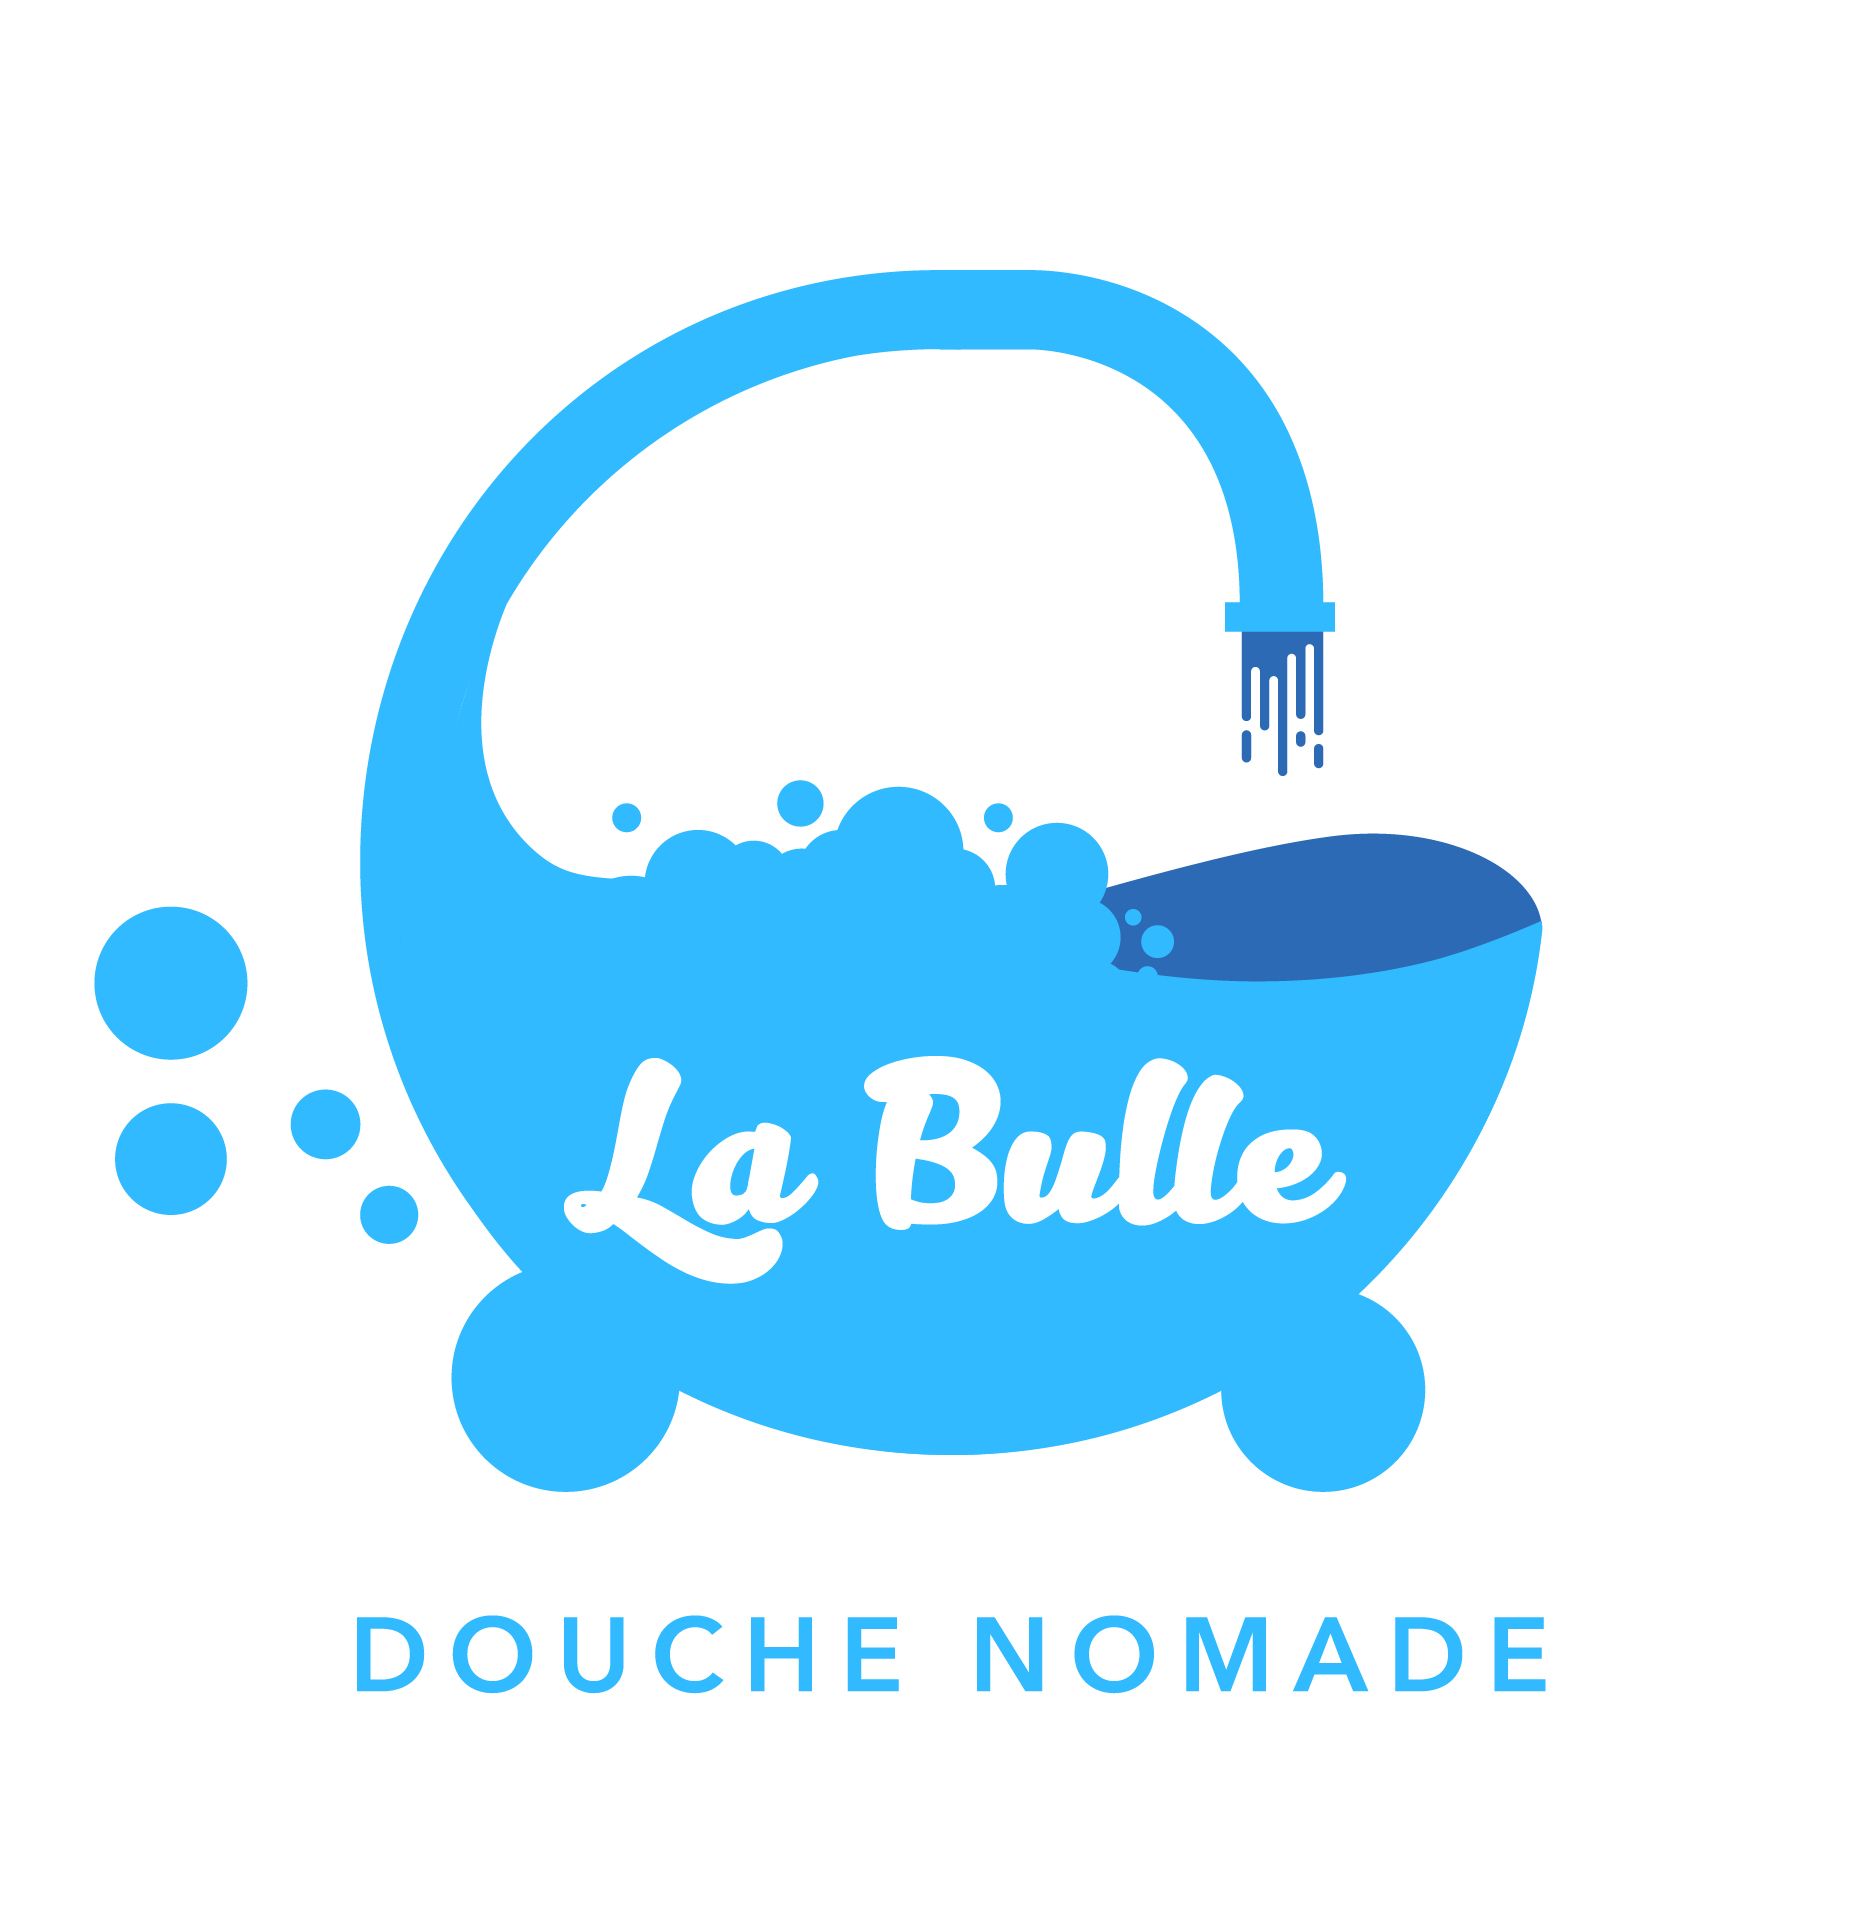 La bulle douche nomade